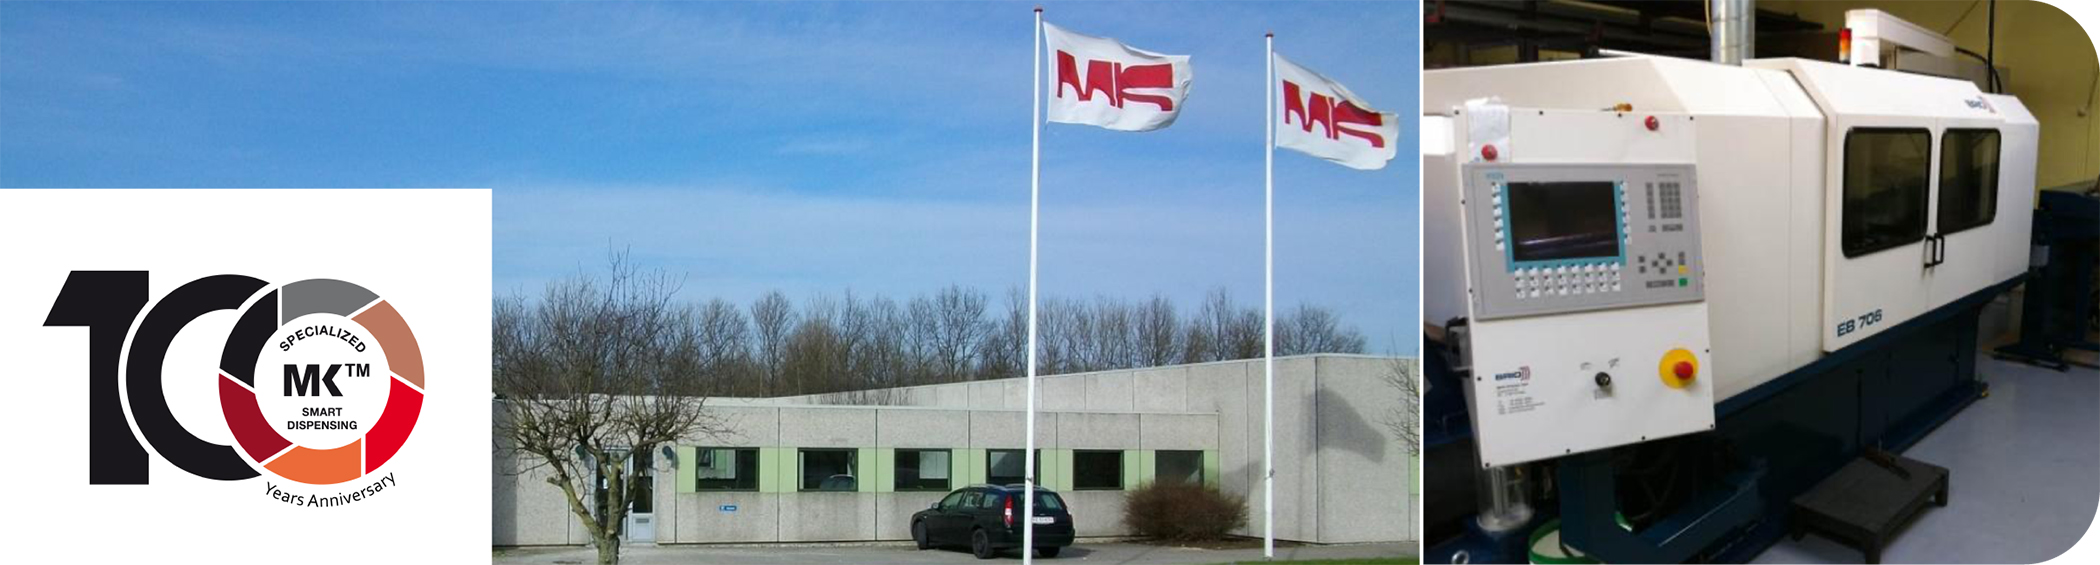 Hauptsitz und Produktion von MK als Marke der Krøger A/S